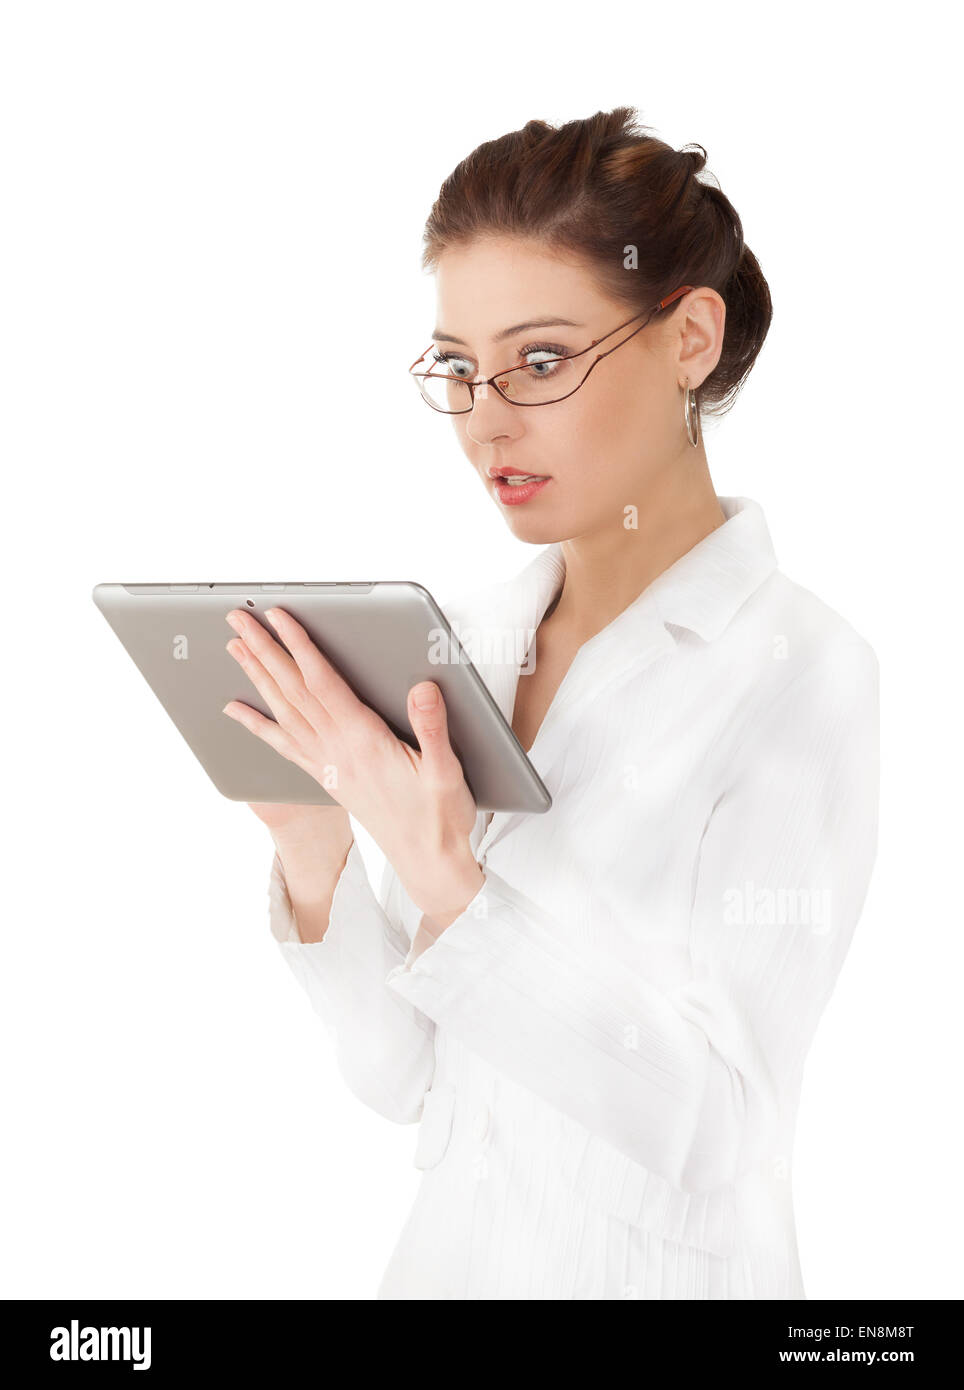 Porträt der Frau arbeitet auf einem Tabletcomputer, überrascht oder Angst Gesichtsausdruck, isoliert auf weißem Hintergrund. Stockfoto